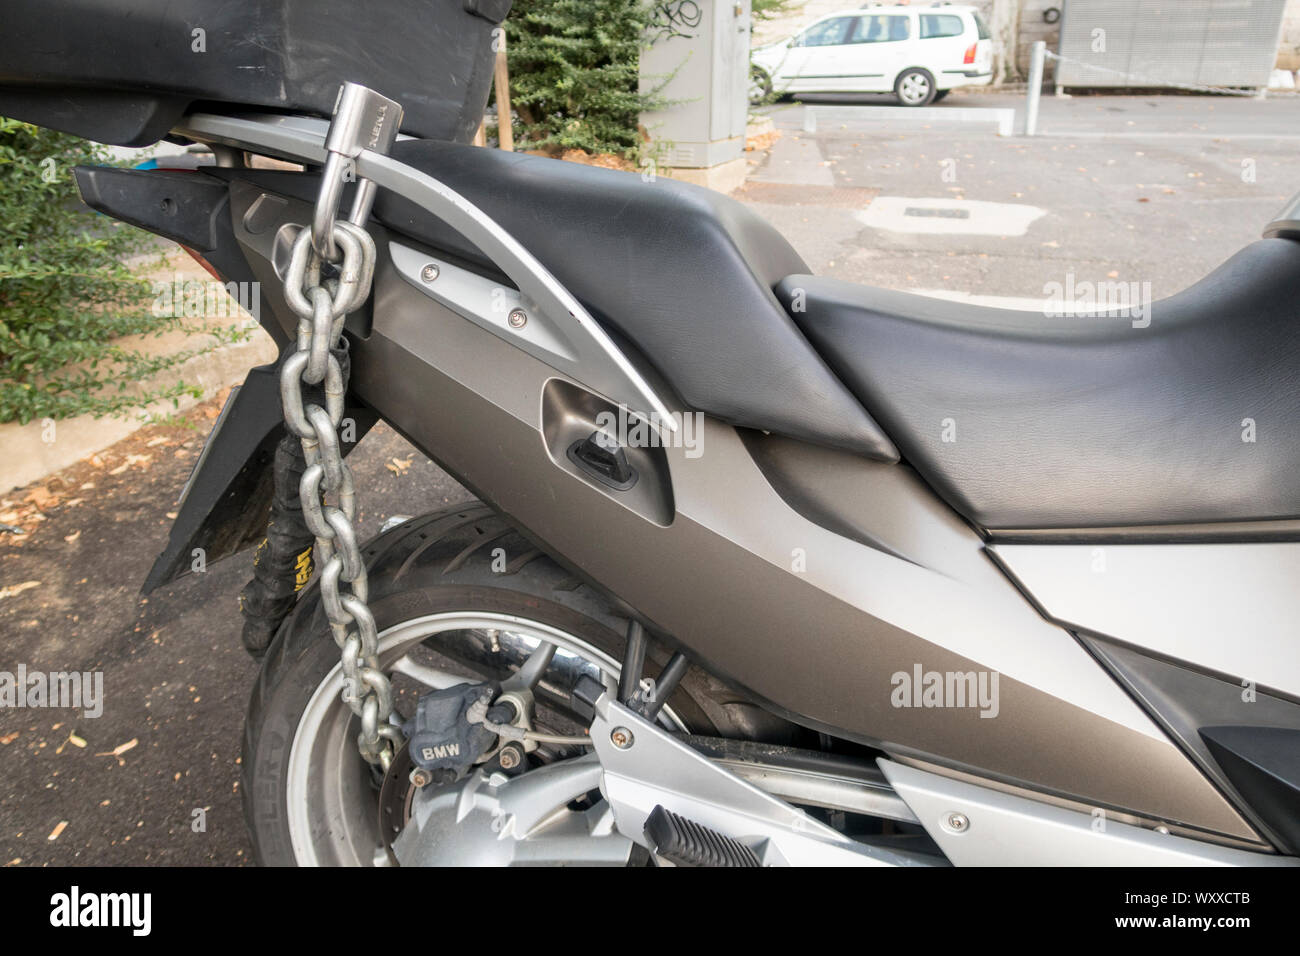 Motorrad Anti-Diebstahl-Kette mit Sicherheitsschloss Vorhängeschloss am  Hinterrad, Schutz gegen Diebstahl Stockfotografie - Alamy